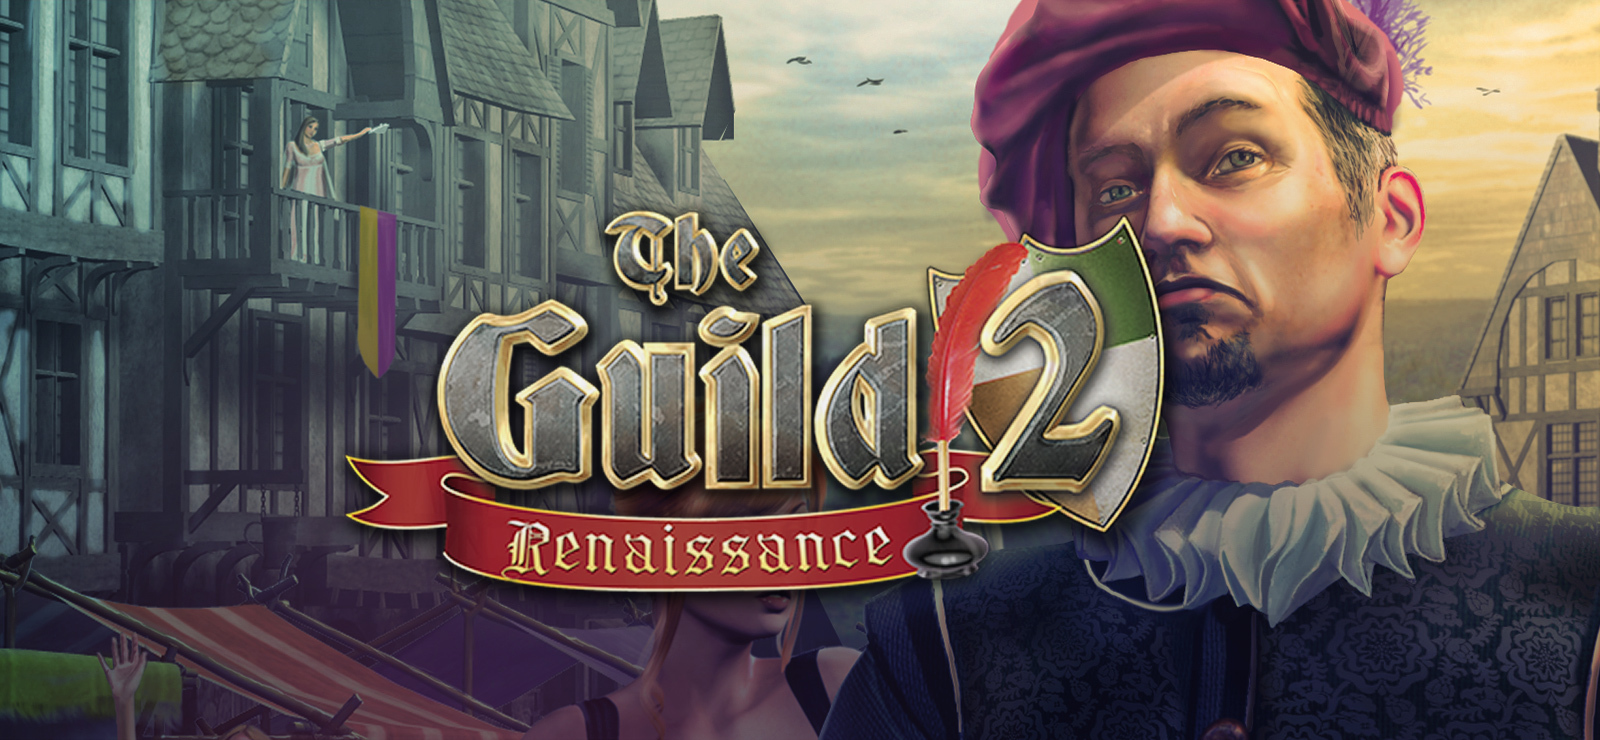 the guild 2 renaissance hotfix 4.211